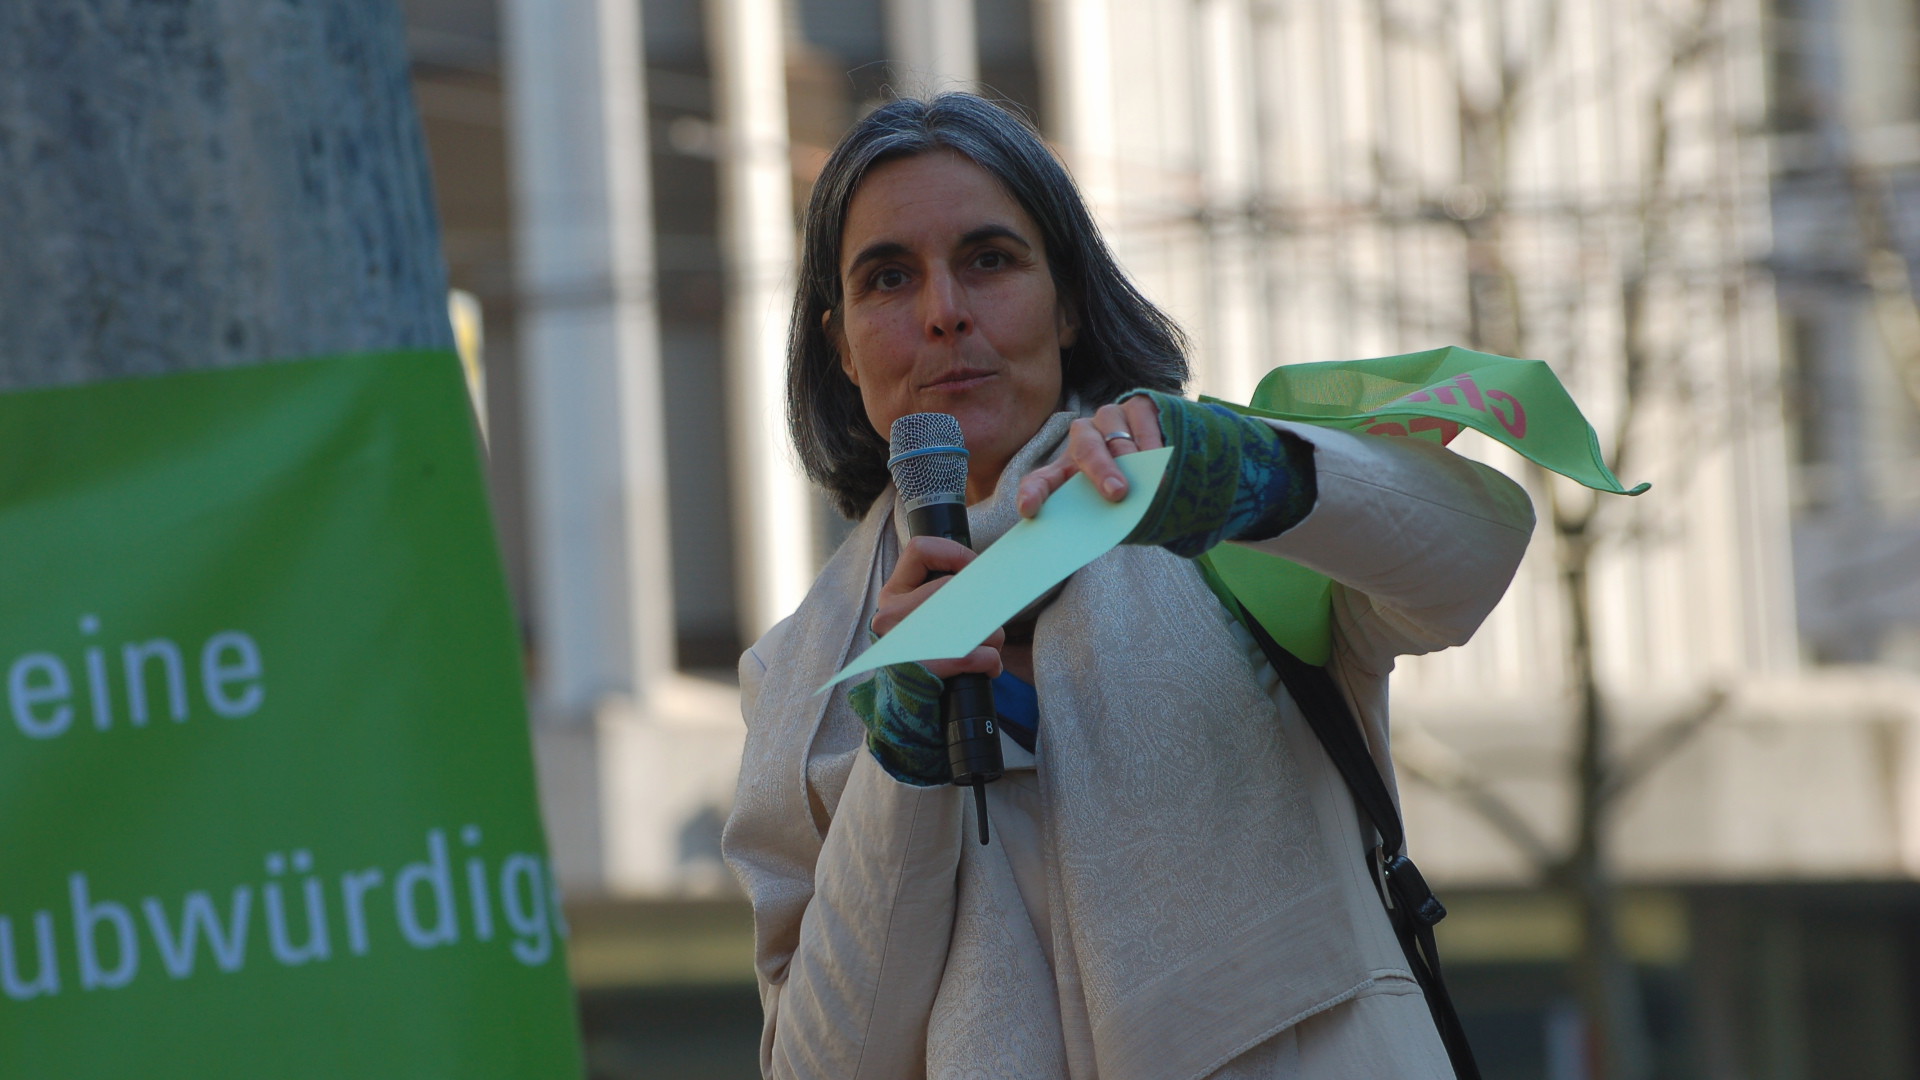 Regula Grünenfelder an der Demonstration "Es reicht" in St. Gallen, März 2014